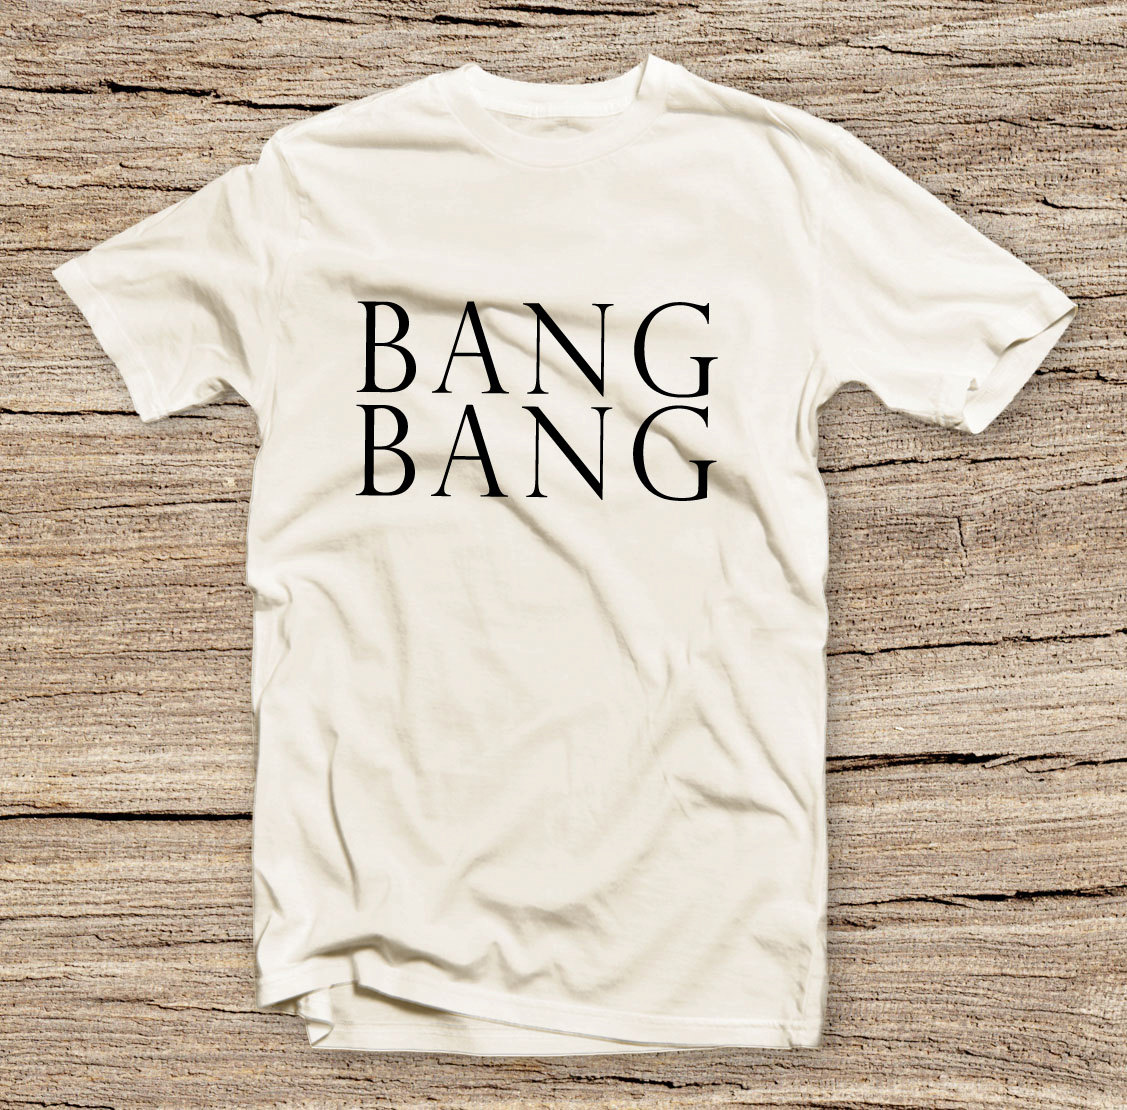 Pts-108 Bang Bang Funny T-shirt Fashion Item, Style T-shirt, Fashion Printed T-shirt